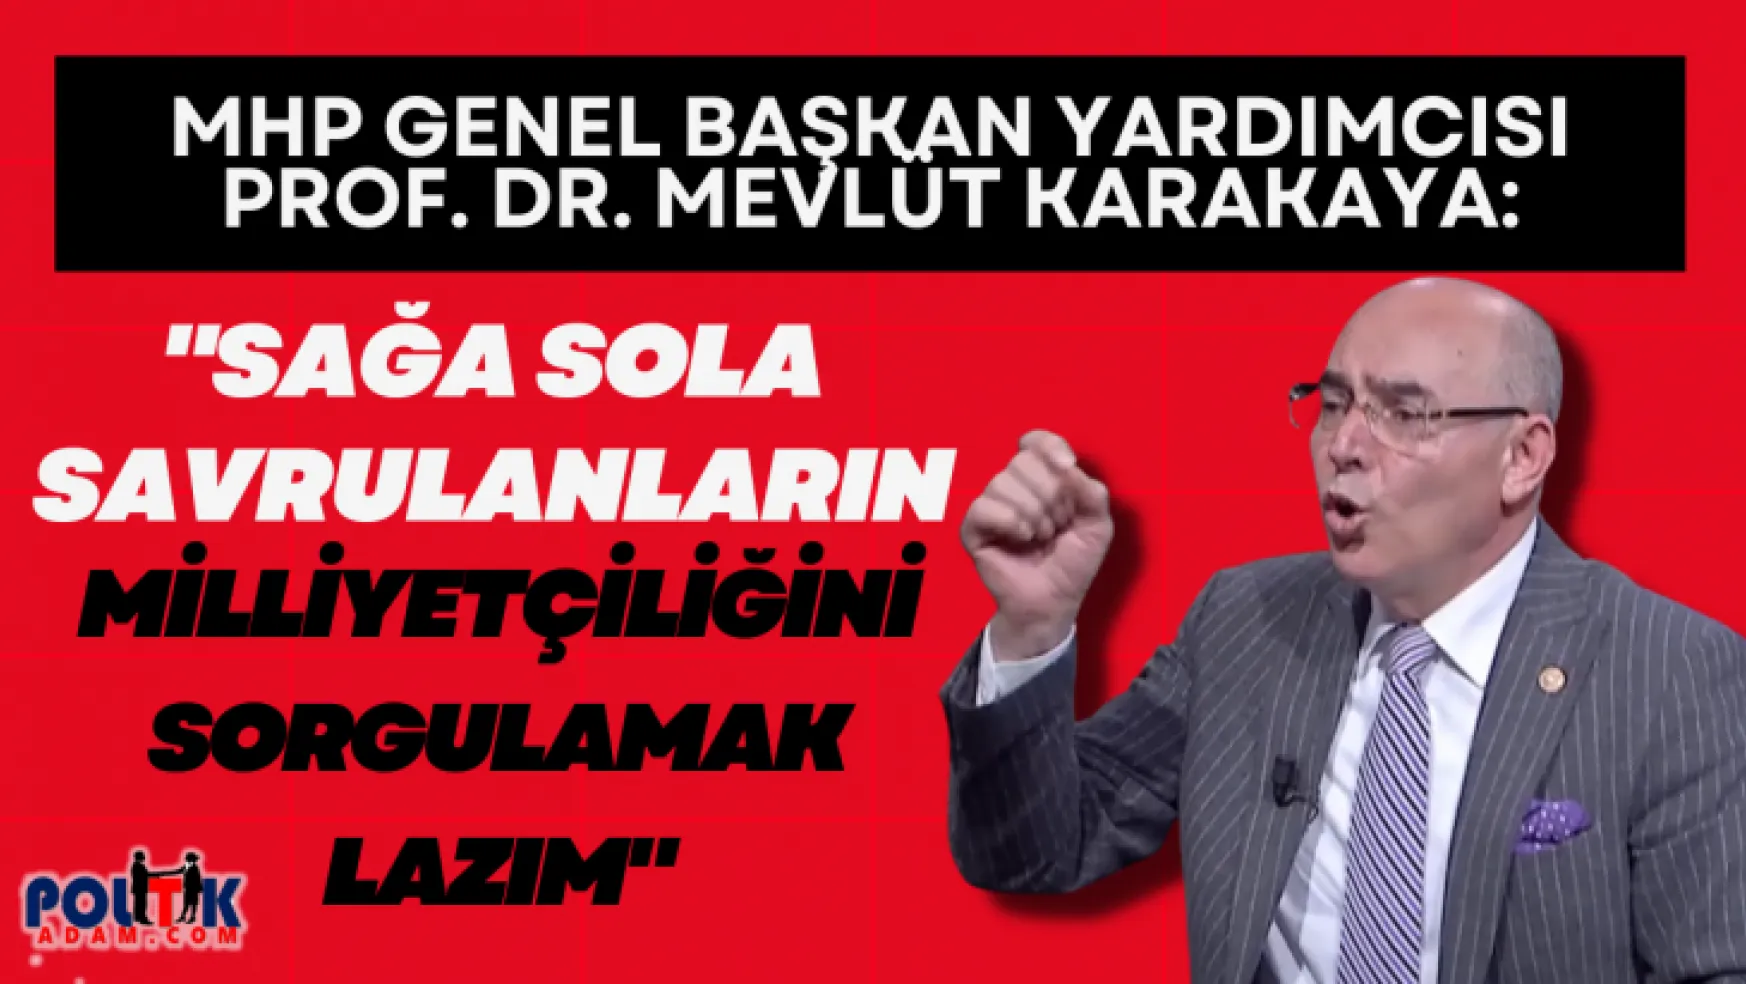 MHP Genel Başkan Yardımcısı Prof. Dr. Mevlüt Karakaya: 'Sağa sola savrulanların milliyetçiliğini sorgulamak lazım!'